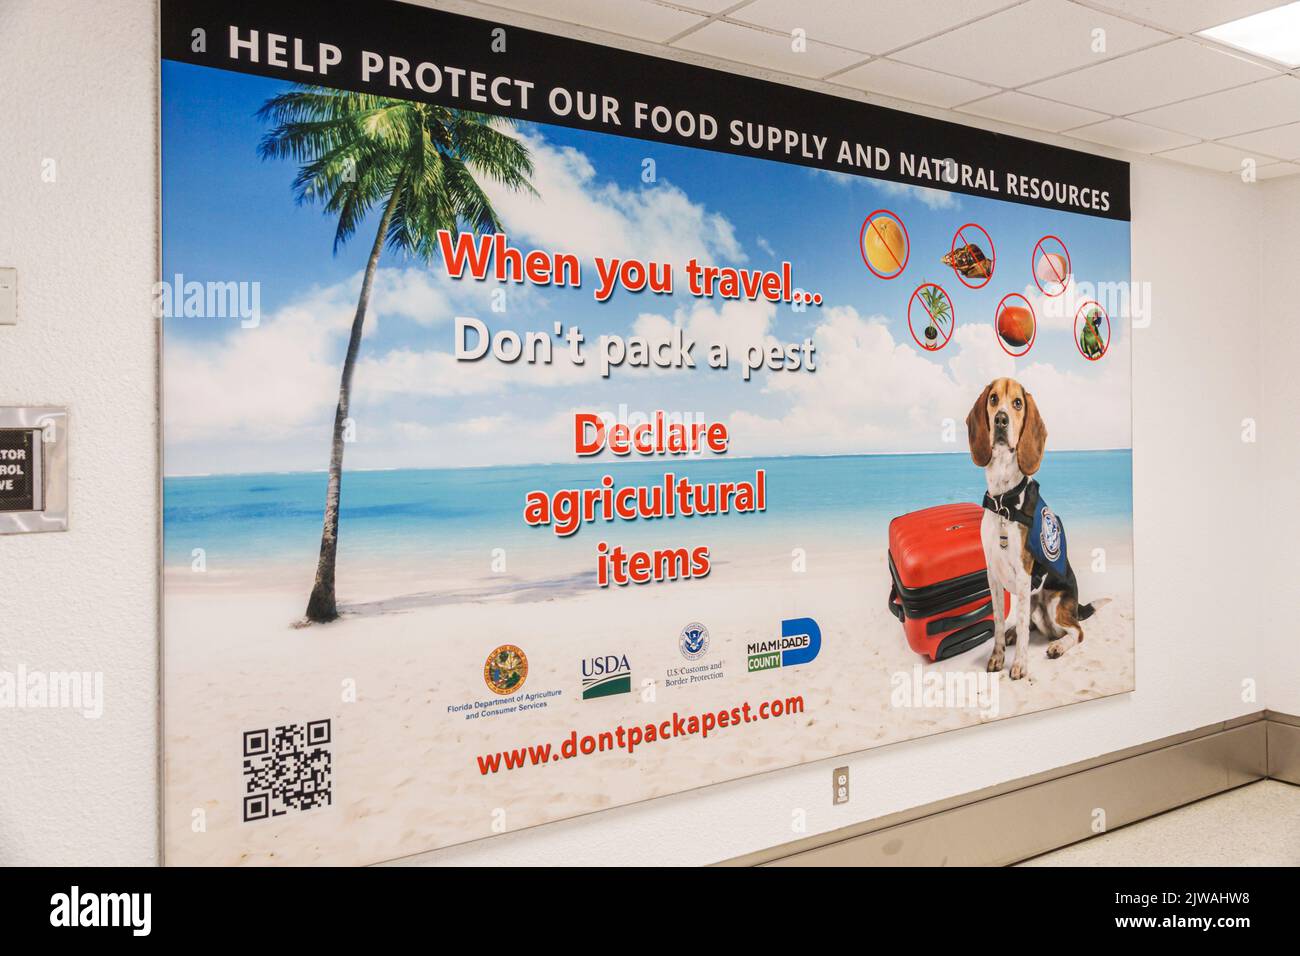 Miami Florida, Aeropuerto Internacional MIA Terminal Concourse área interior de la puerta, cartel de mensajes EE.UU. Estados Unidos América del Norte American Americ Foto de stock